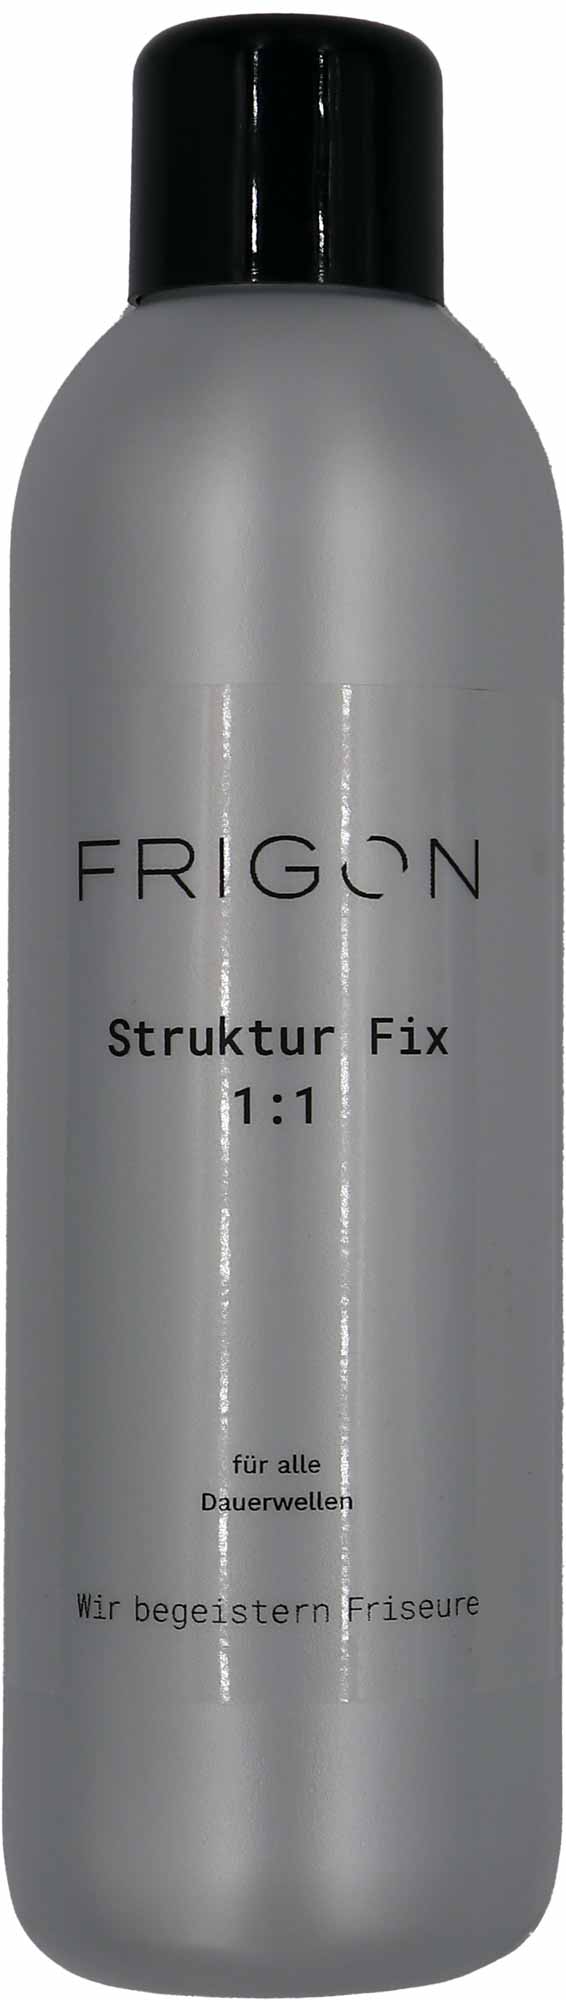 Frigon Struktur Fix 1:1 1L